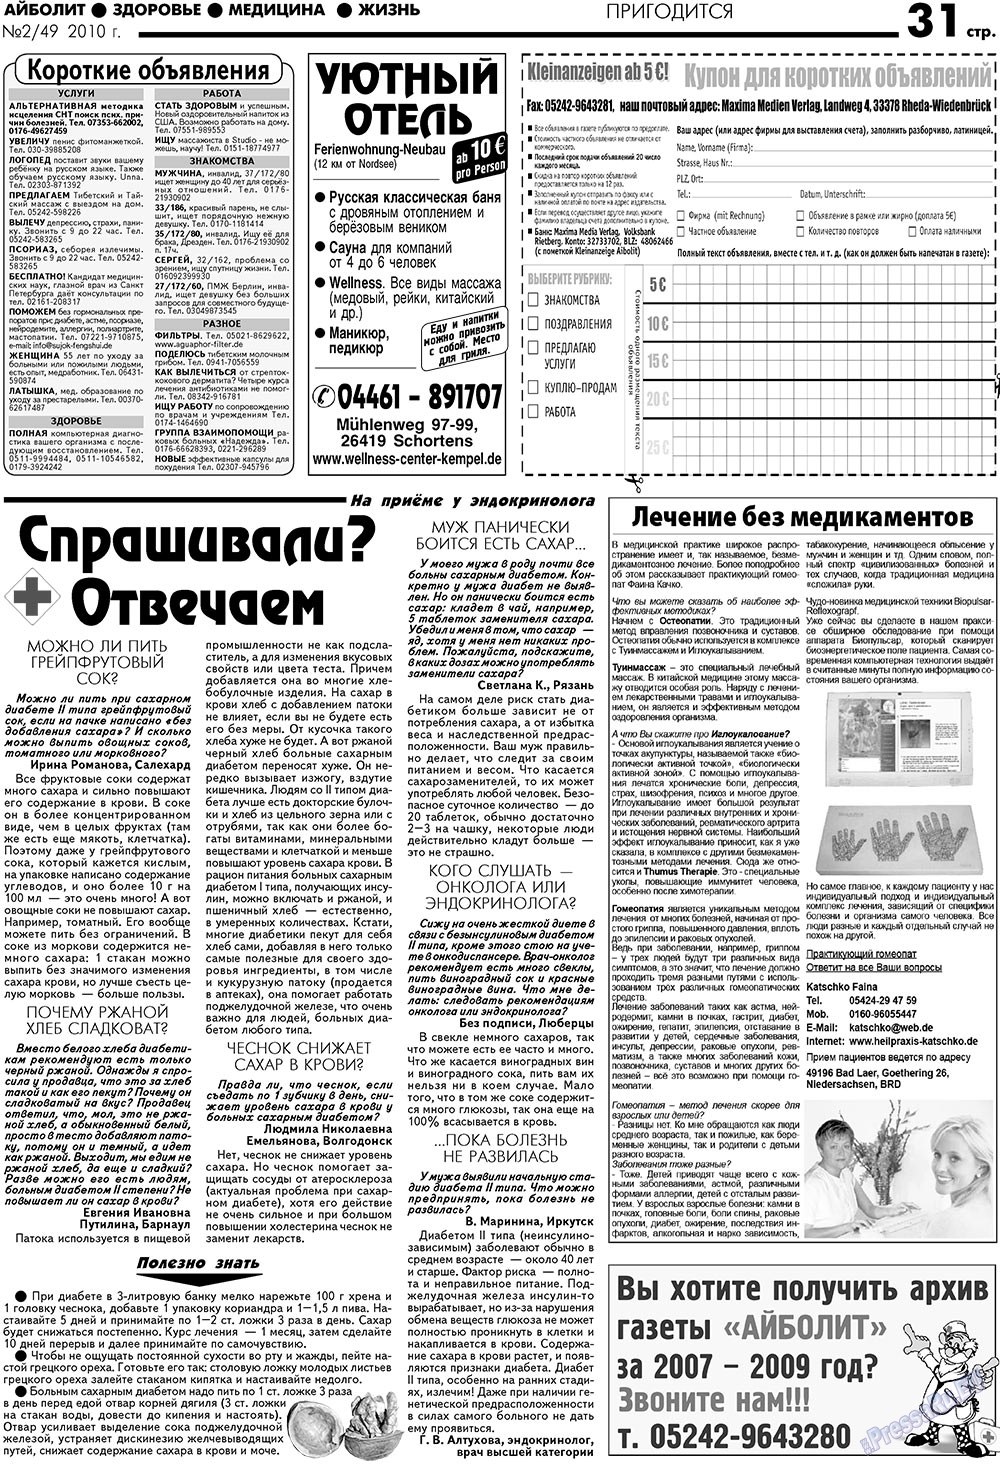 АйБолит, газета. 2010 №2 стр.31